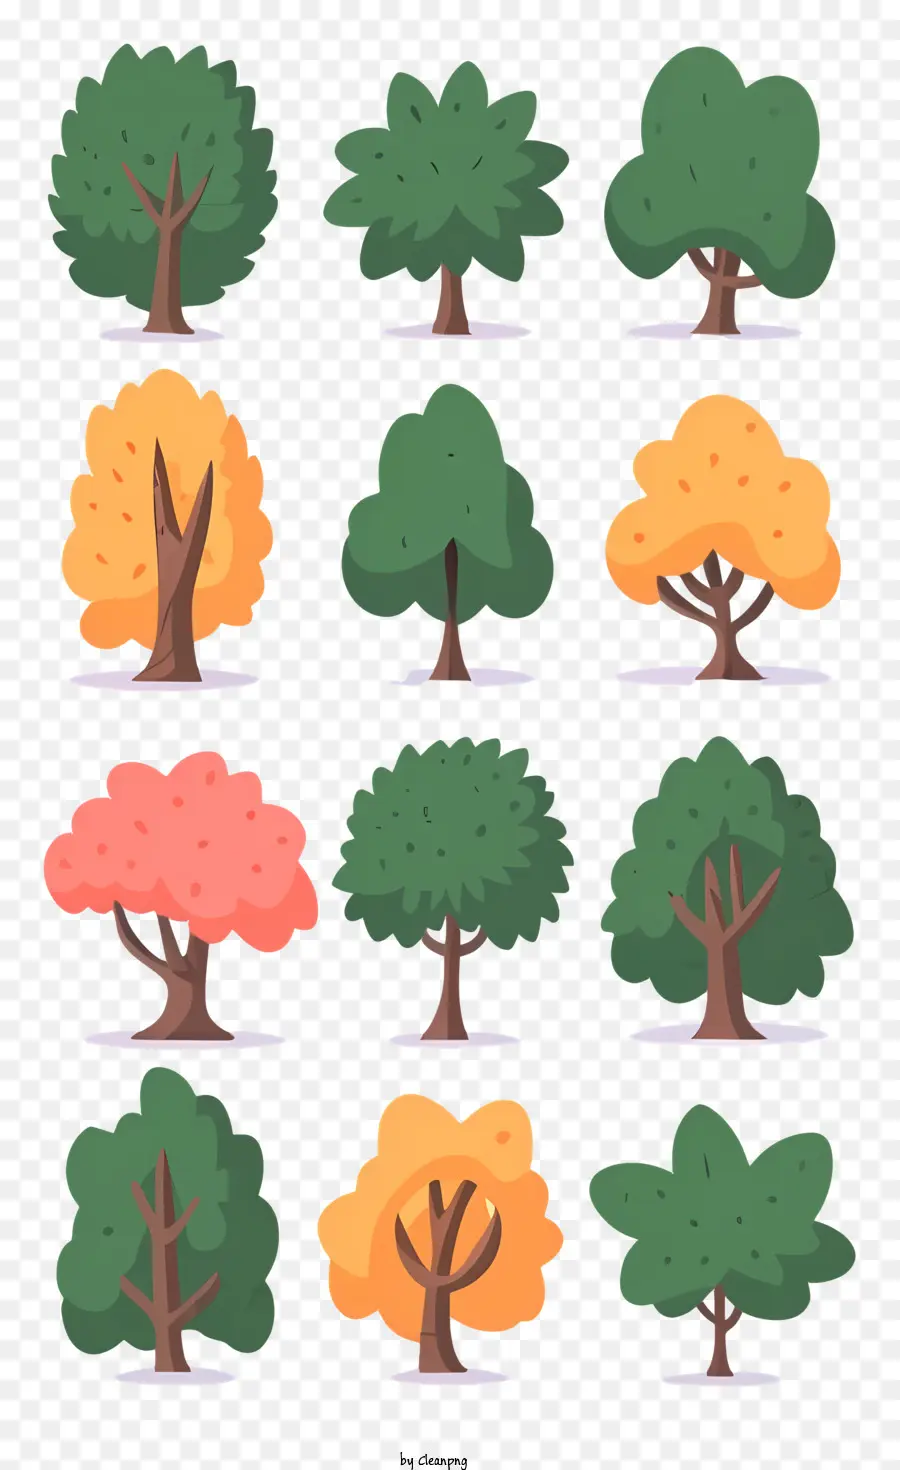 foglie di un albero - Raccolta di immagini che mostrano vari tipi di alberi